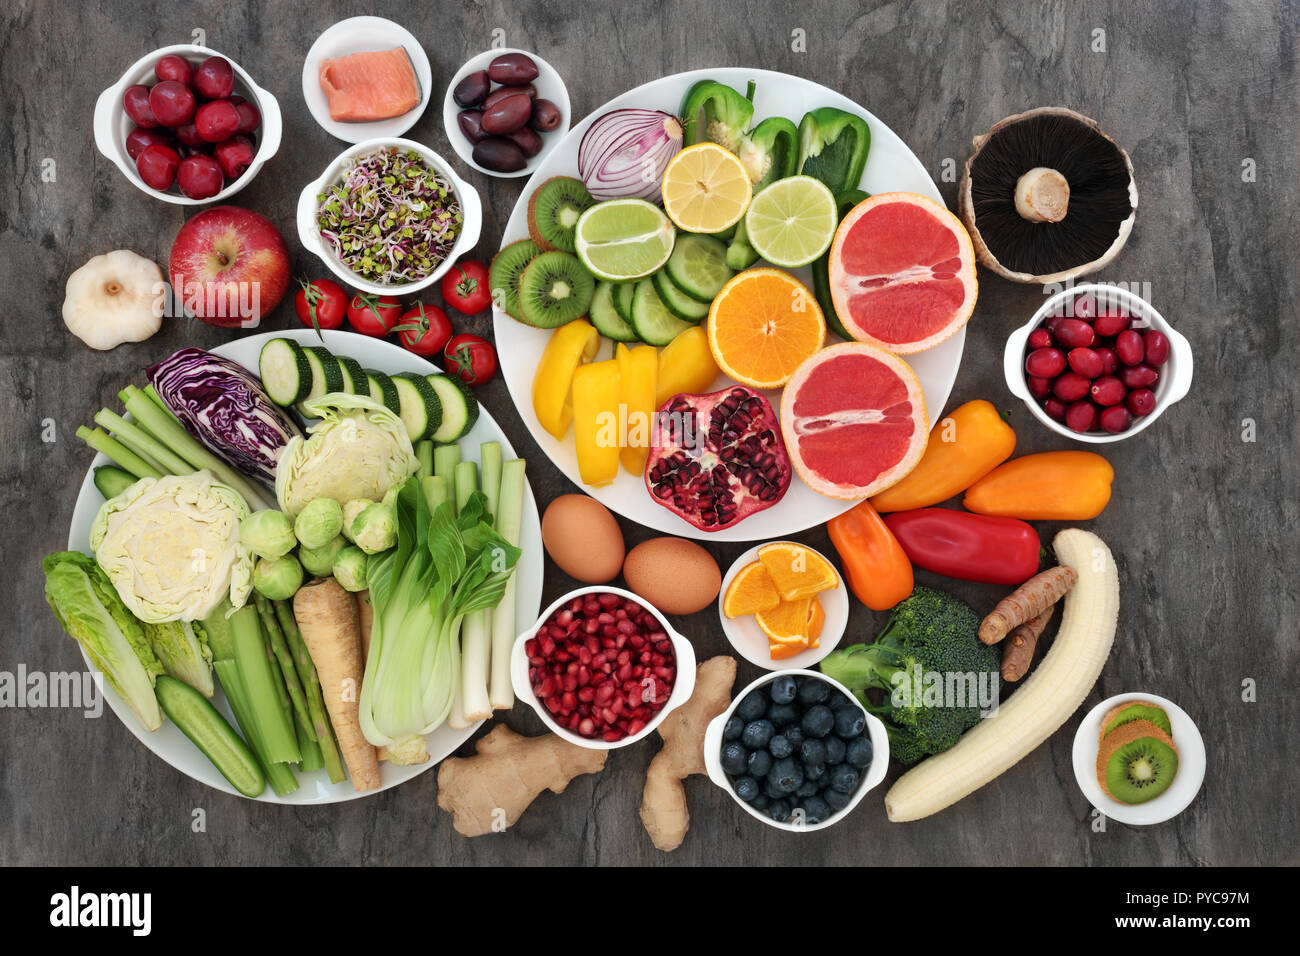 Großen super Health Food Collection mit frischem Obst, Gemüse, Fisch, Milchprodukte, Kräutern und Gewürzen. Hohe an Antioxidantien, Vitamine und Ballaststoffe. Stockfoto